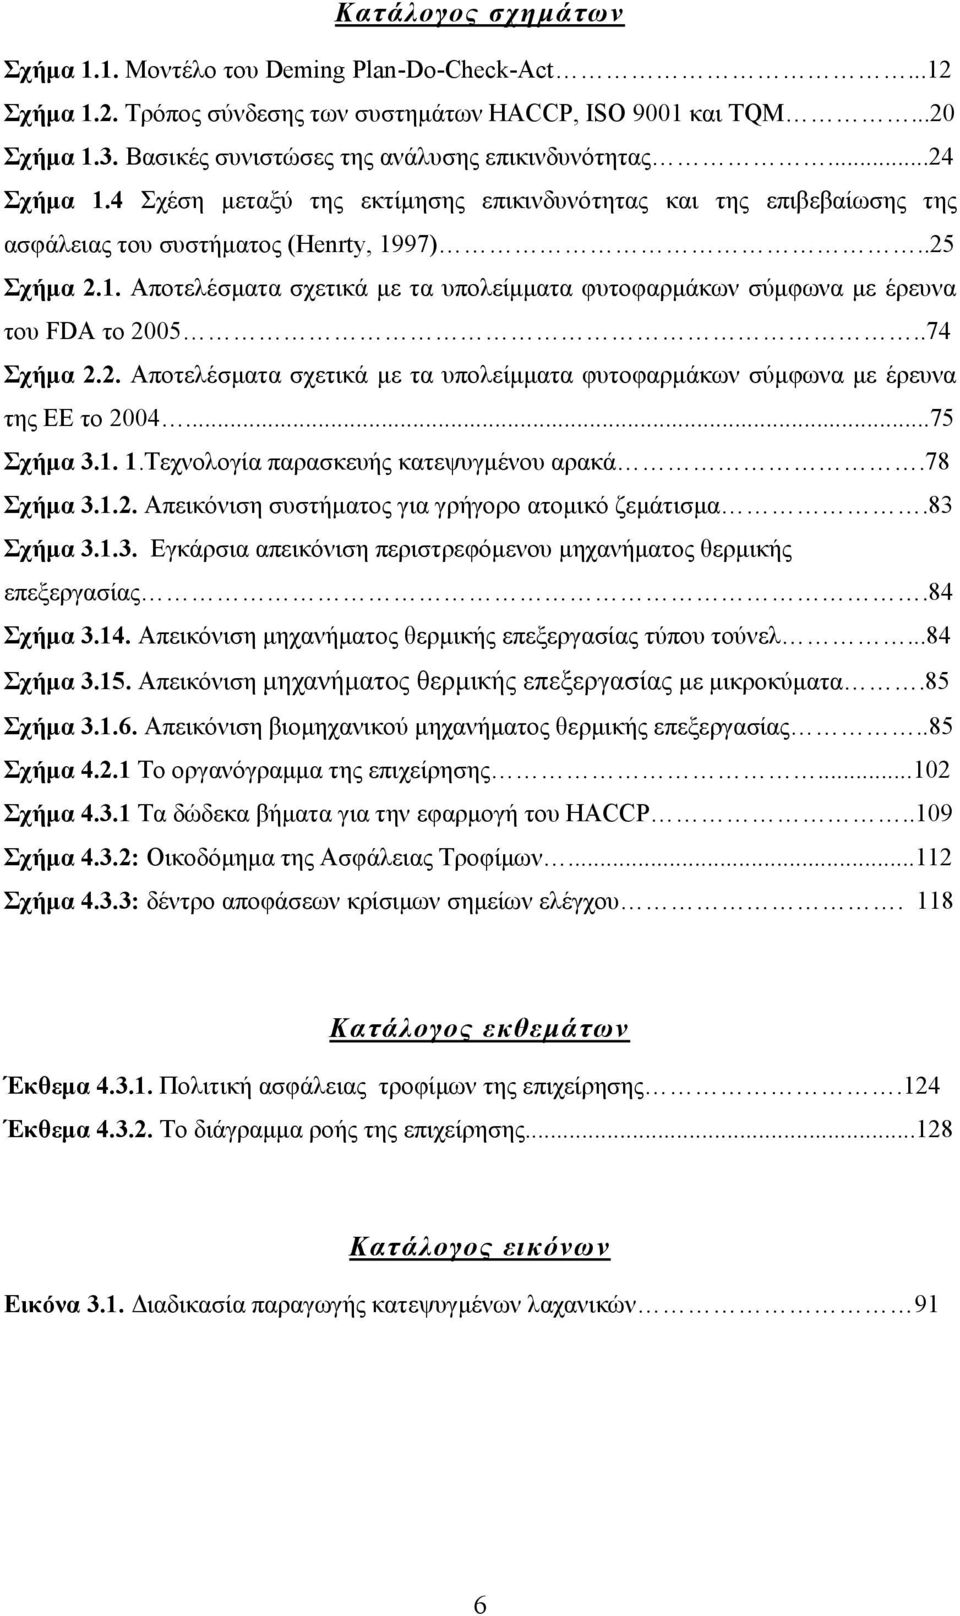 .74 Σχήμα 2.2. Αποτελέσματα σχετικά με τα υπολείμματα φυτοφαρμάκων σύμφωνα με έρευνα της ΕΕ το 2004...75 Σχήμα 3.1. 1.Τεχνολογία παρασκευής κατεψυγμένου αρακά.78 Σχήμα 3.1.2. Απεικόνιση συστήματος για γρήγορο ατομικό ζεμάτισμα.